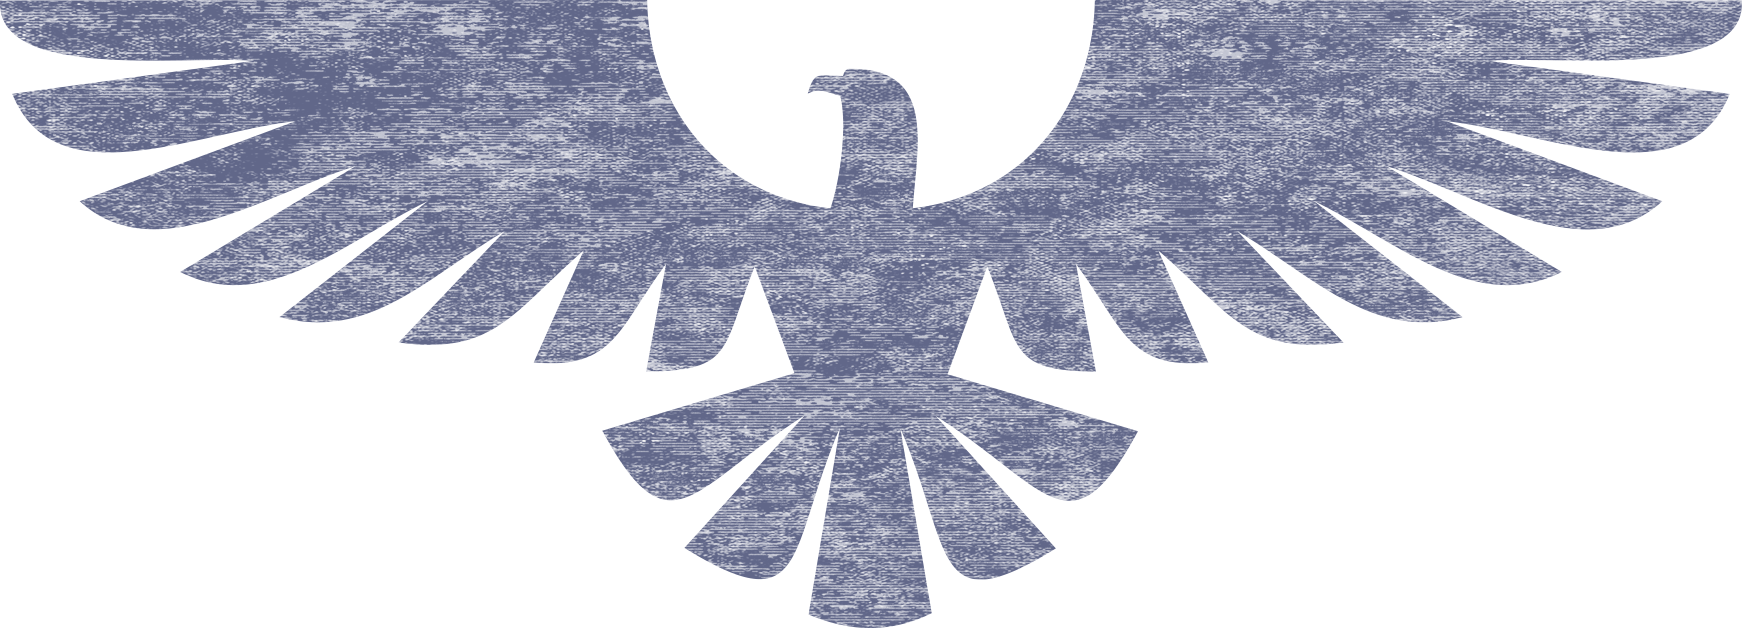 Eagle Symbol PNG Image